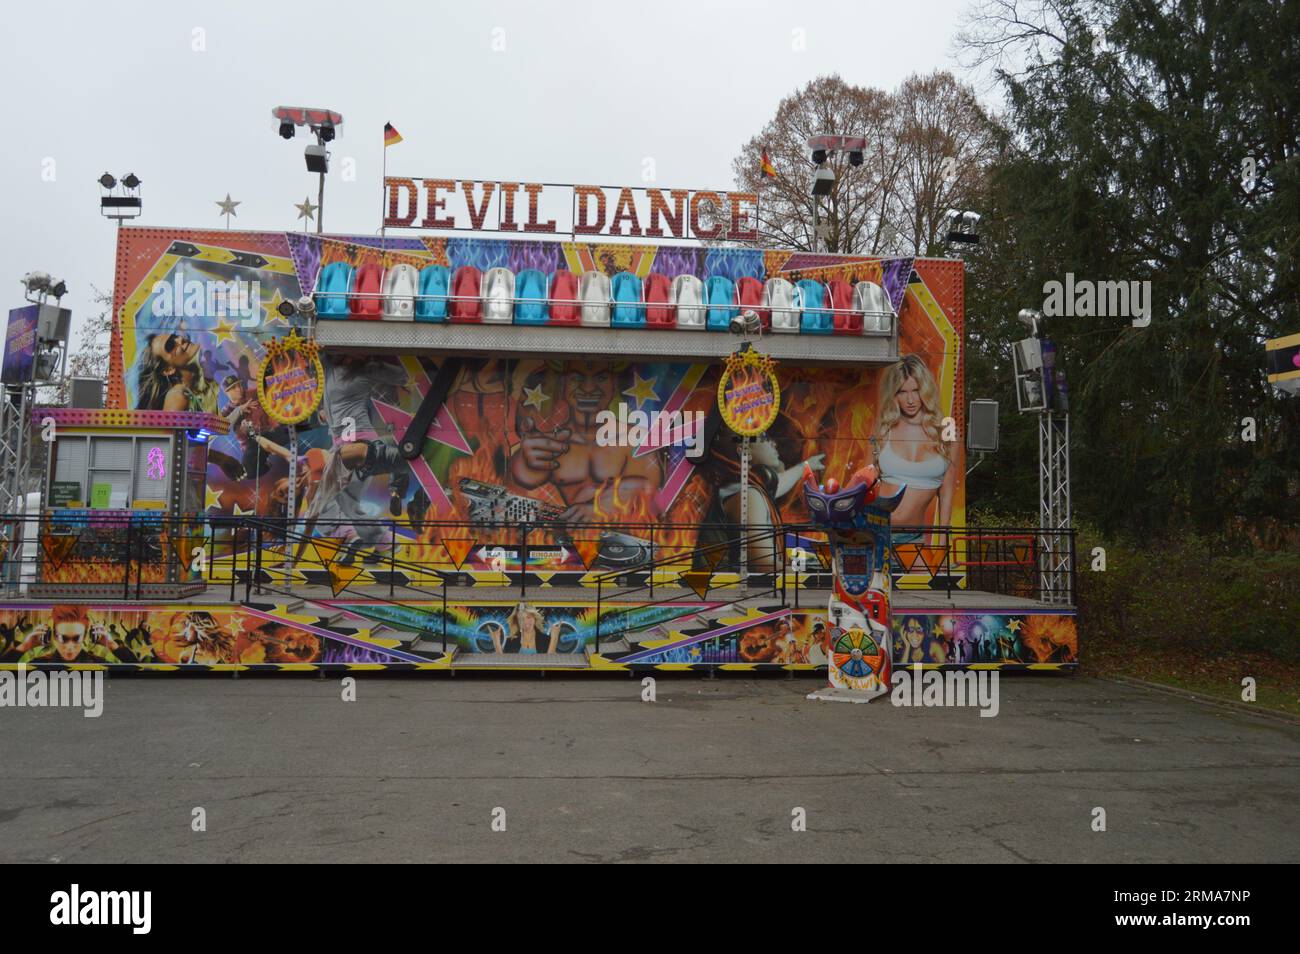 Giro di danza del diavolo nella fiera di Lemgo, Germania Foto Stock